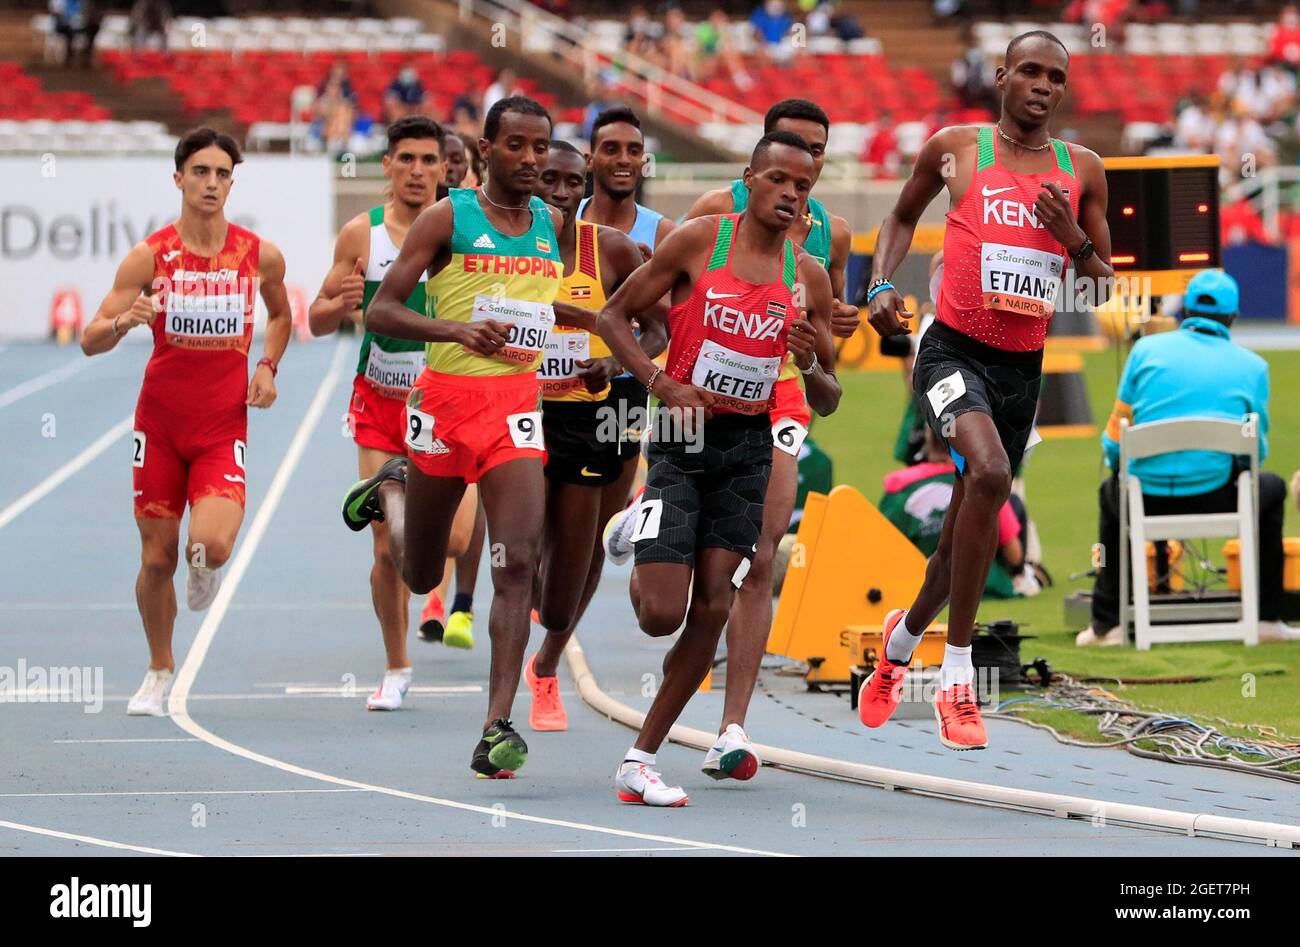 Atletica - Campionati mondiali di atletica U20 2021 - atleti che gareggiano nella finale maschile di 1500 m - Kasarani Stadium, Nairobi, Kenya - 21 agosto 2021. REUTERS/Thomas Mukoya Foto Stock